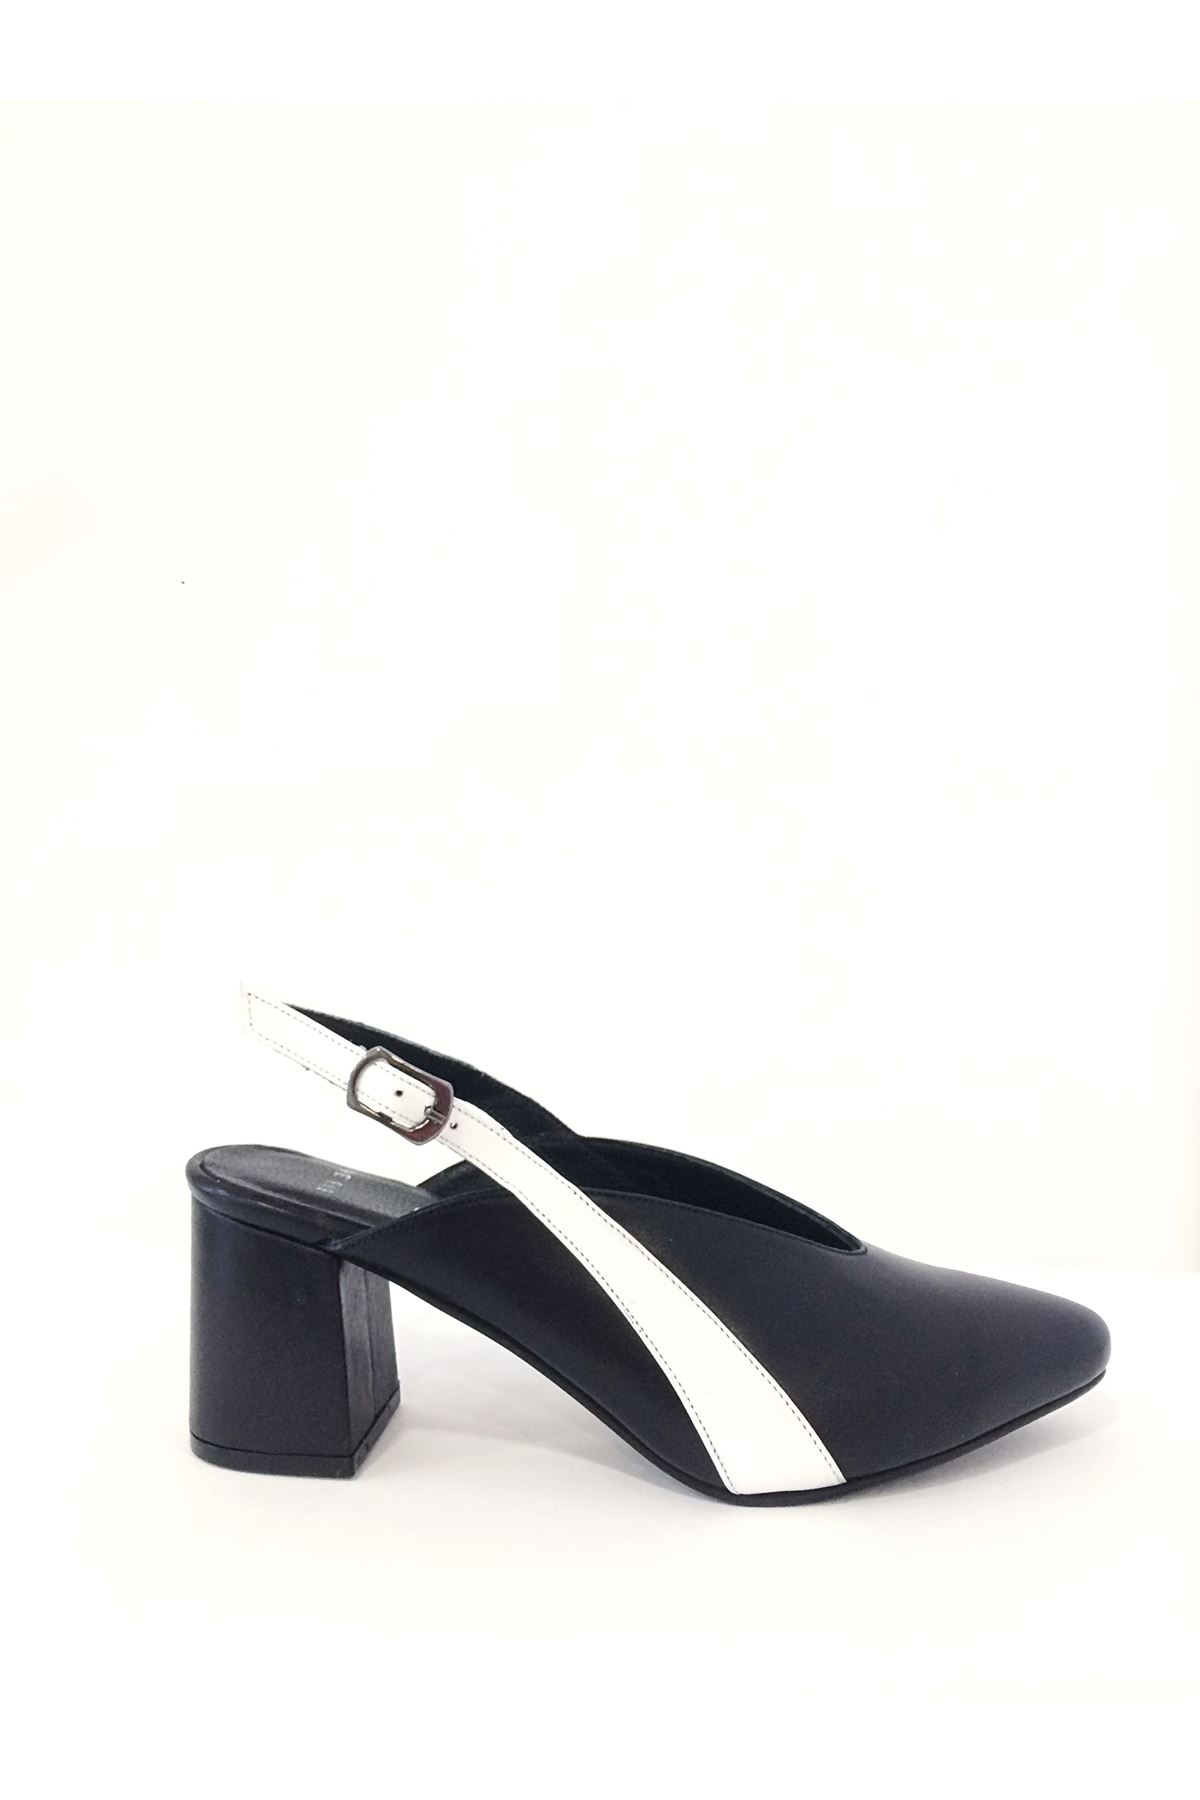 Gerçek Deri Kadın Ayakkabı Siyah  Strip  